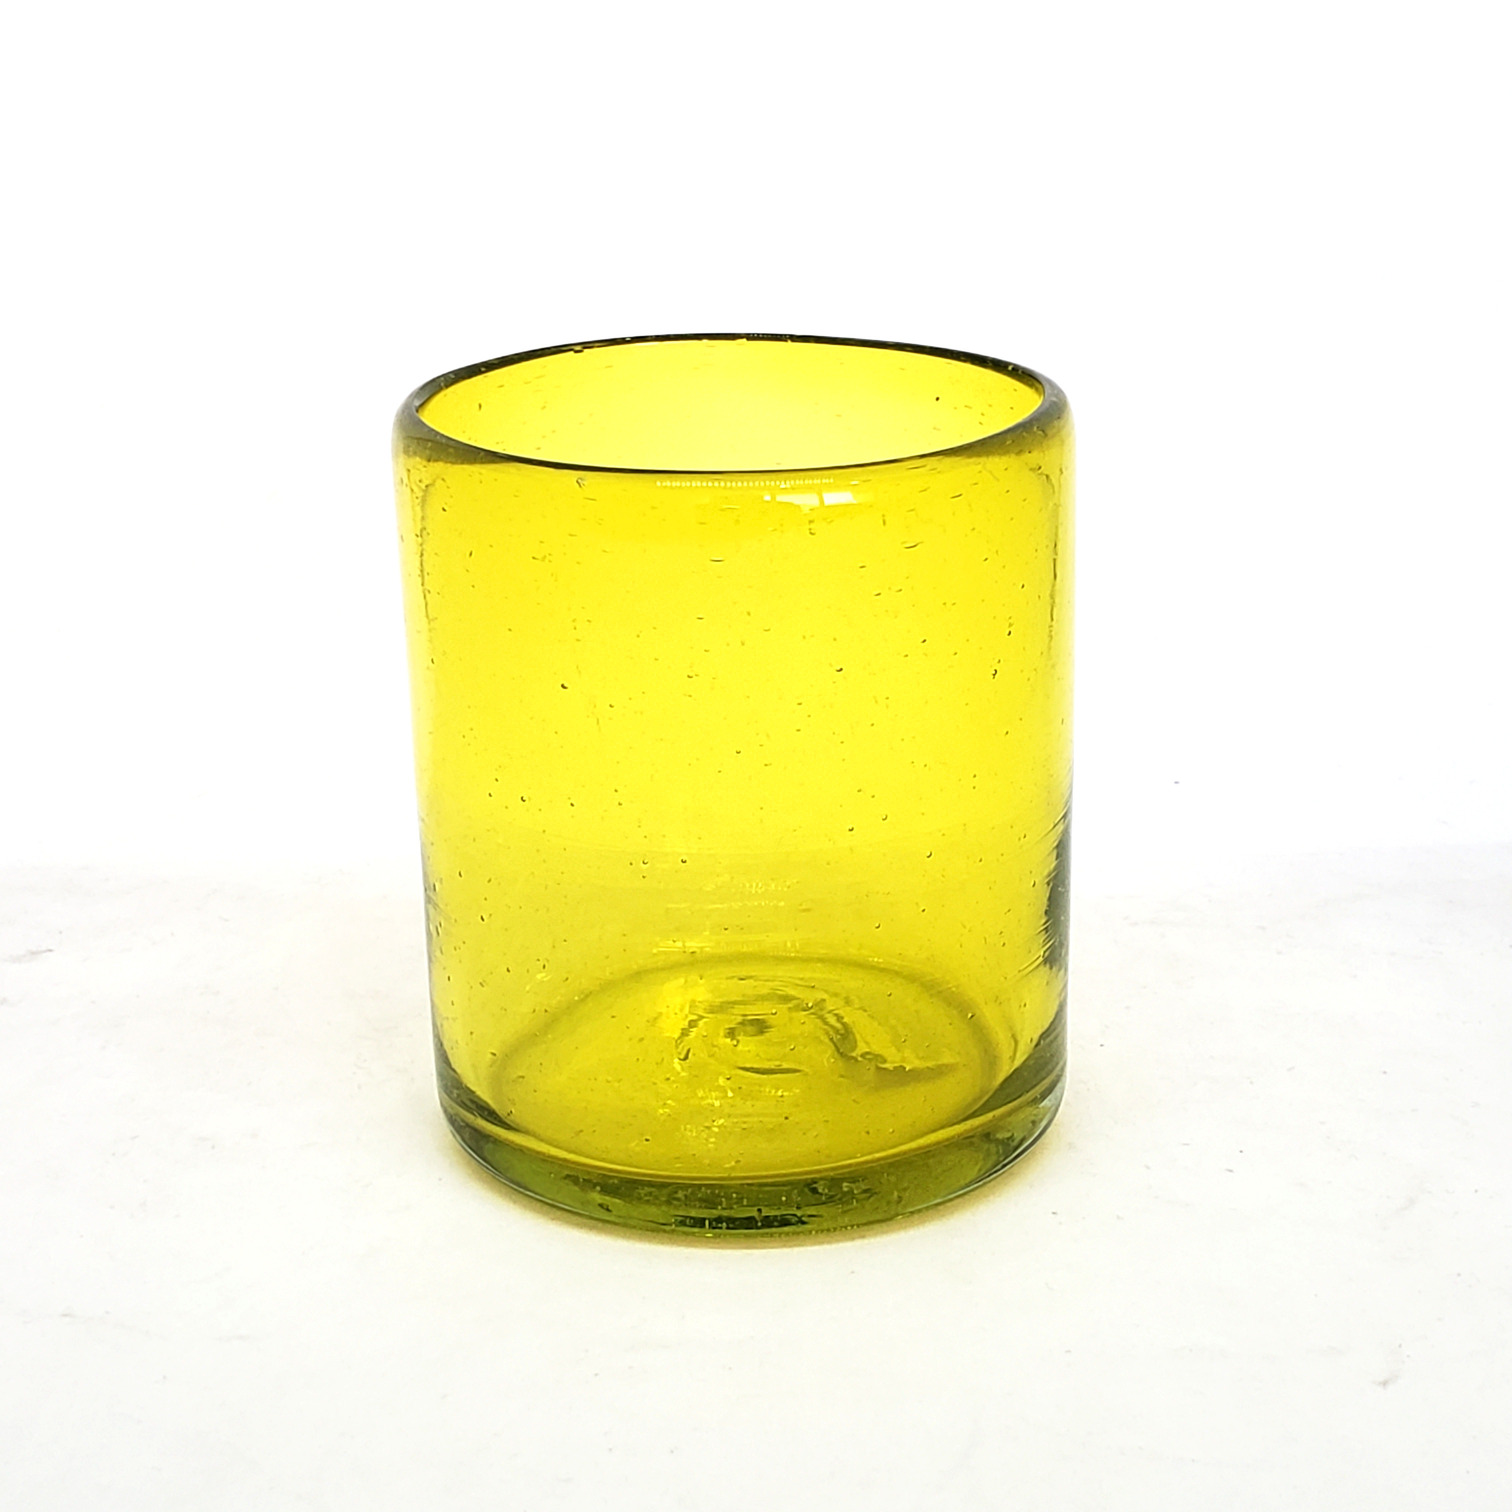 Novedades / Vasos chicos 9 oz color Amarillo Sólido (set de 6) / Éstos artesanales vasos le darán un toque colorido a su bebida favorita.